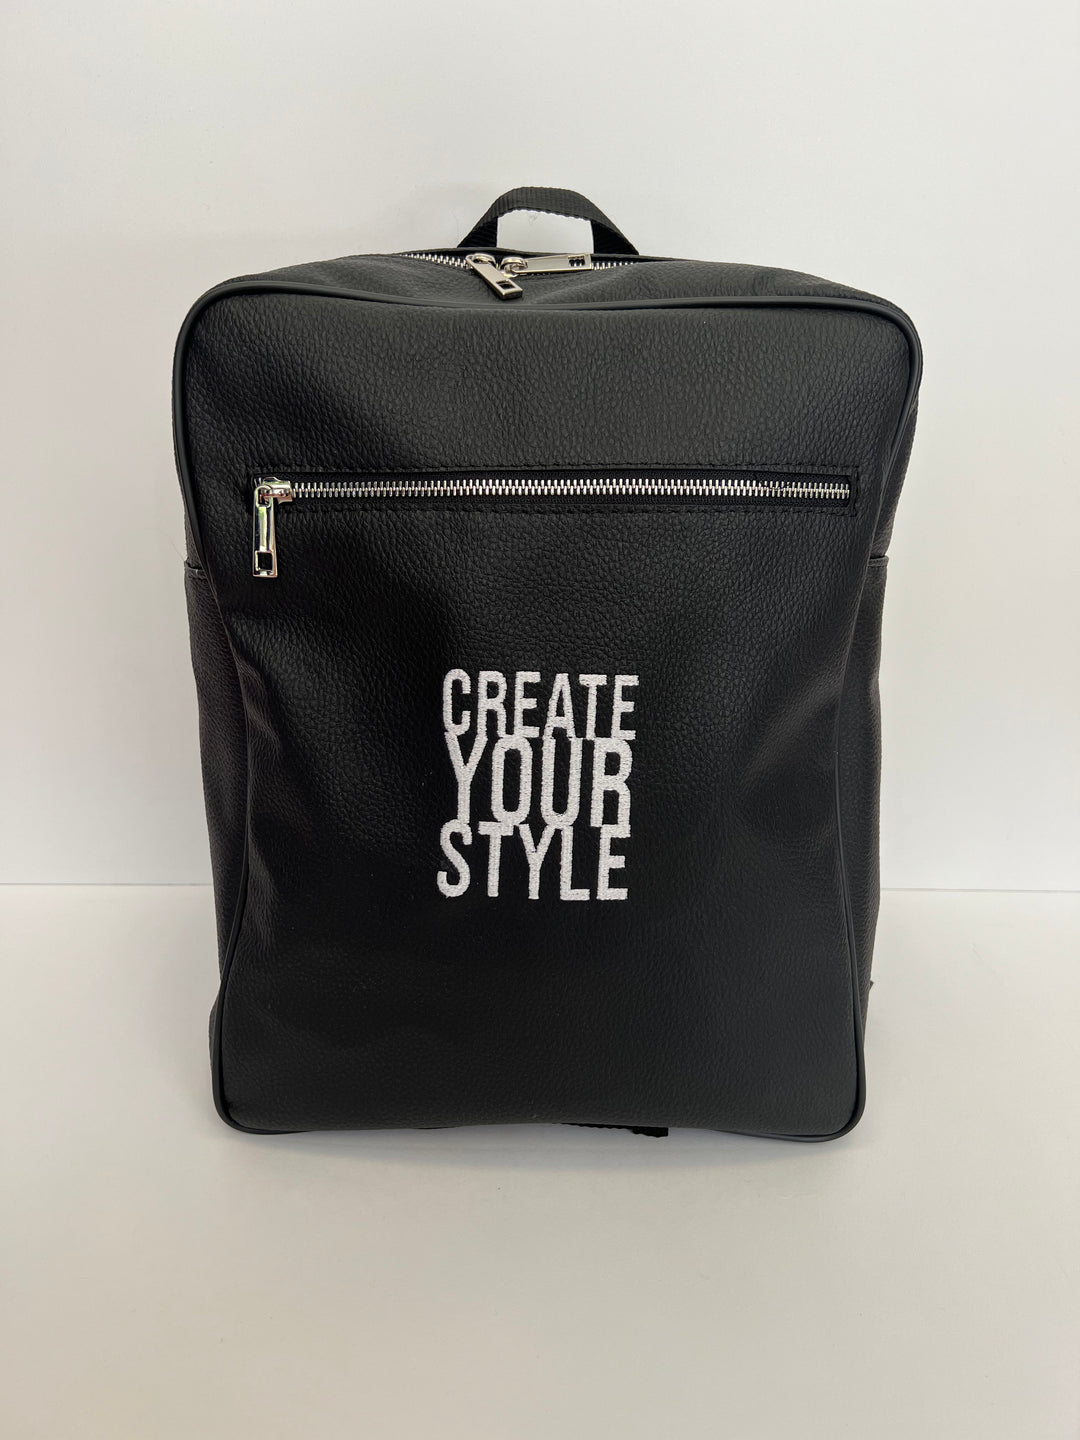 Zaino Ecopelle Rettangolare “Create Your Style” - EV8 Style